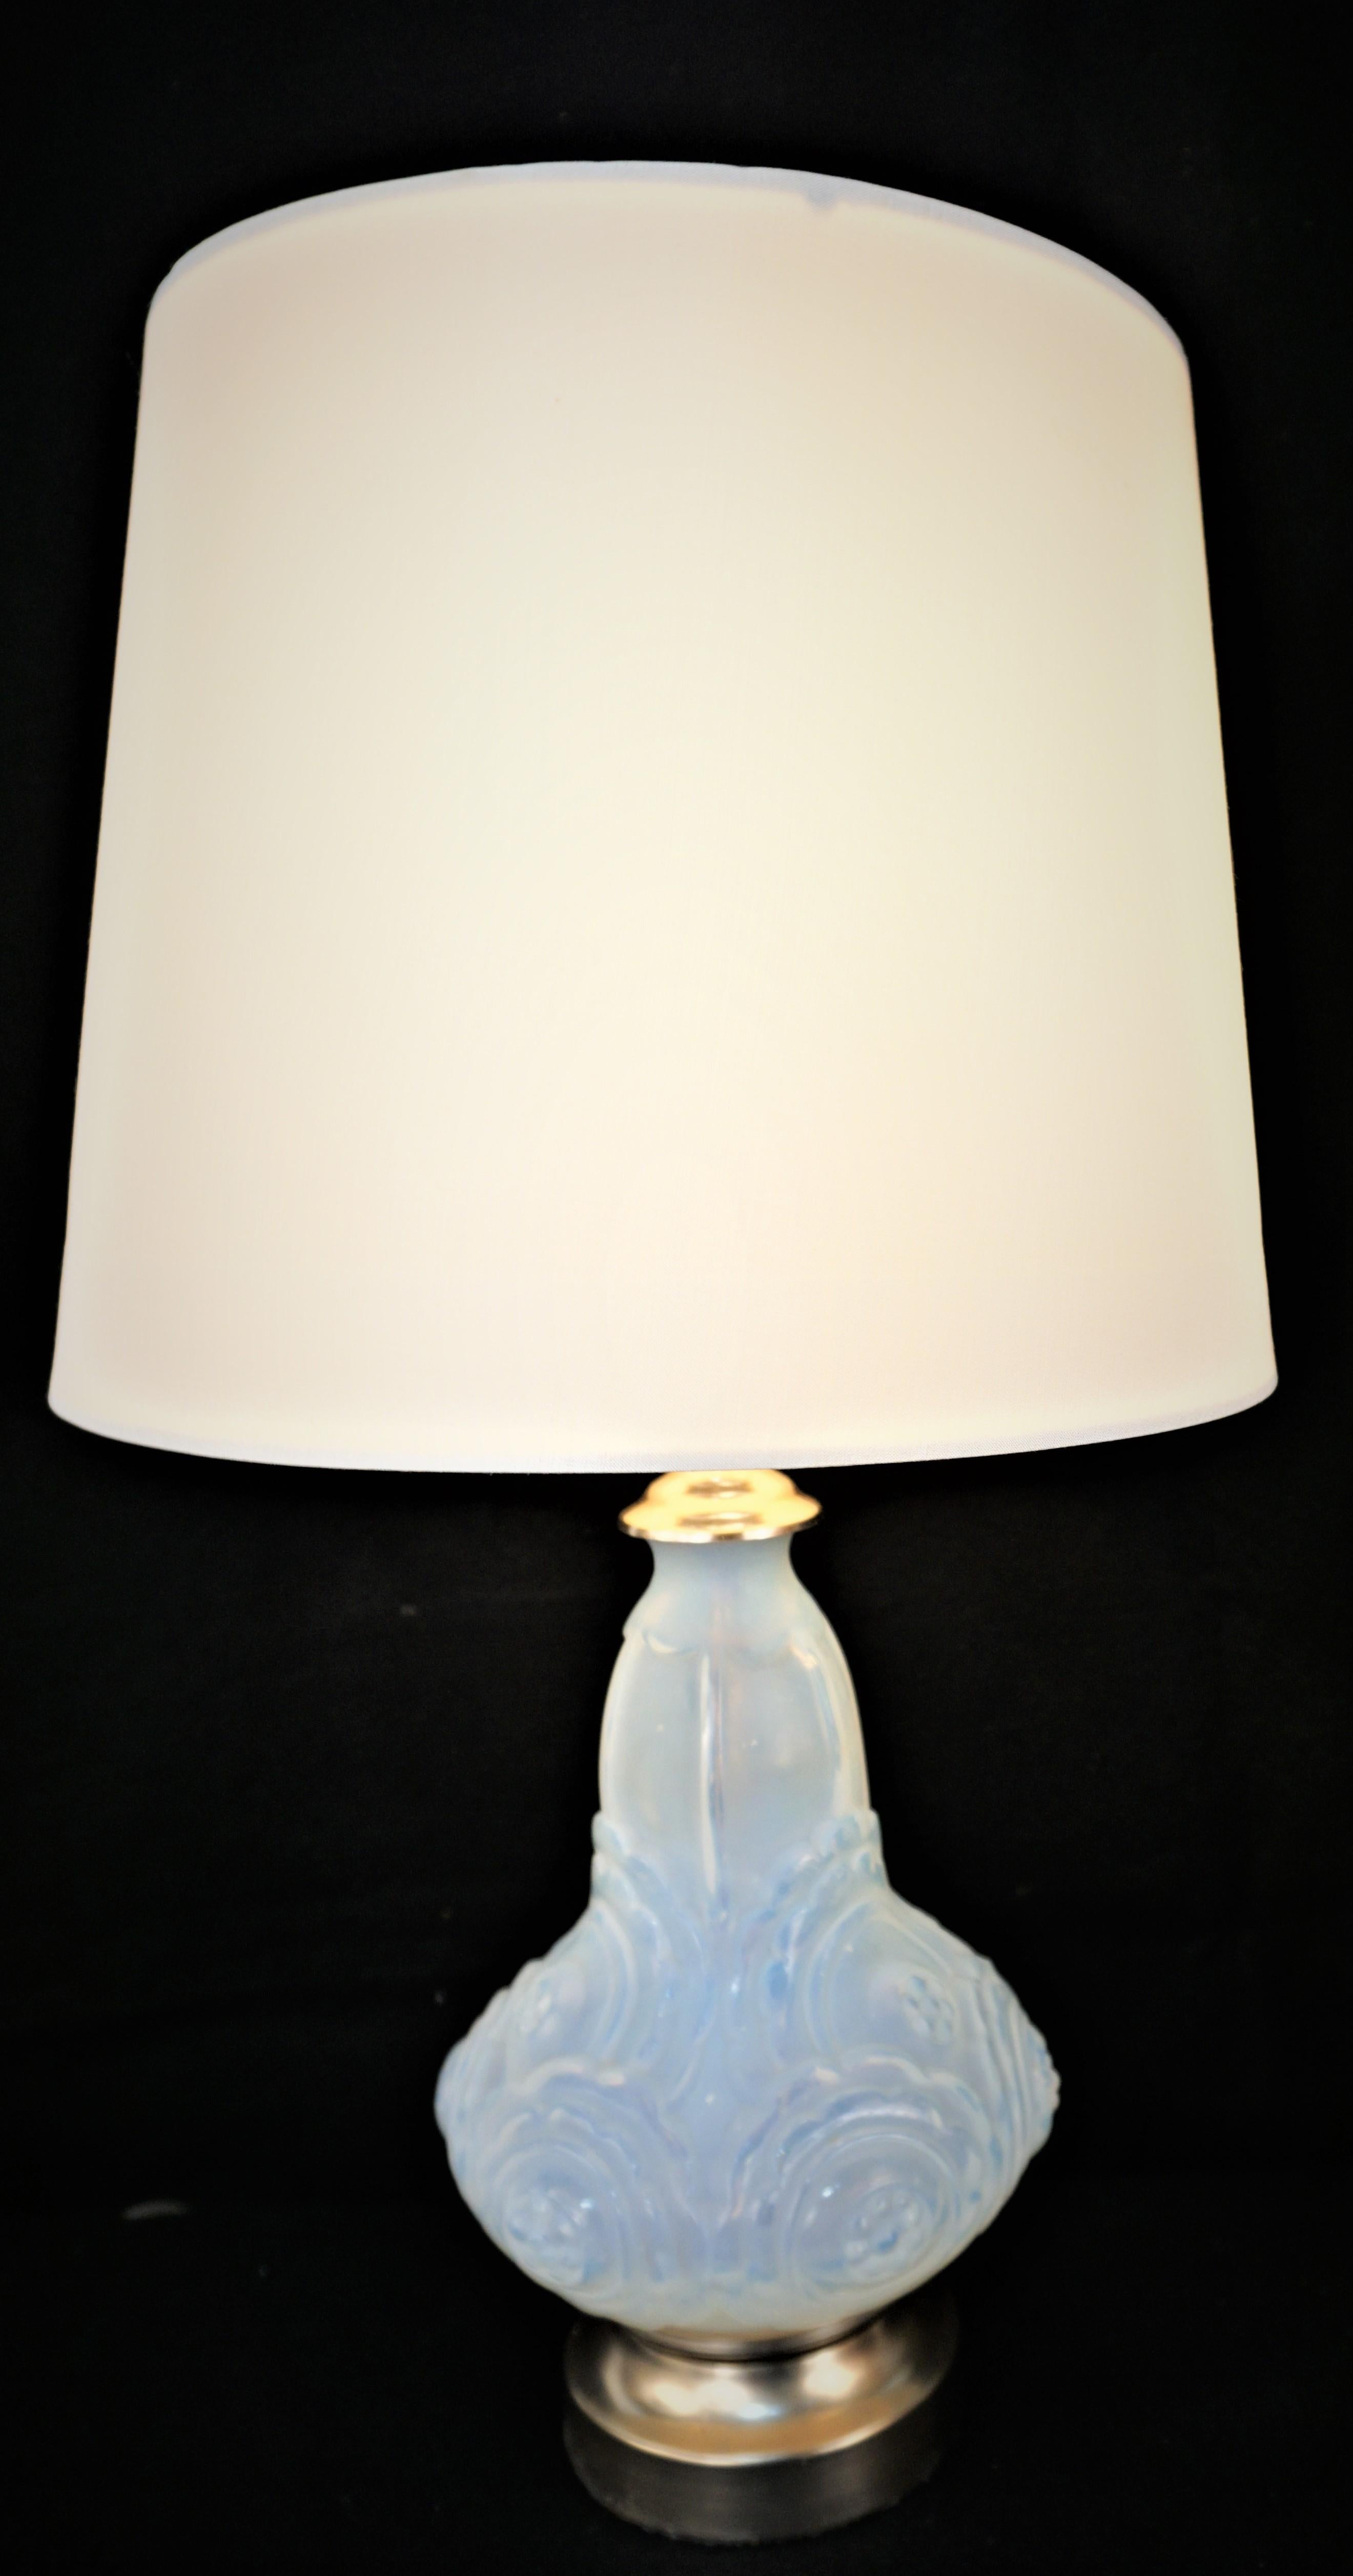 Paar honigblaue Opalglas-Tischlampen mit Nickel auf Bronzesockel.
3-Wege-Steckdose, Hardback-Lampenschirme aus Seide.
Die Messung umfasst den Lampenschirm.